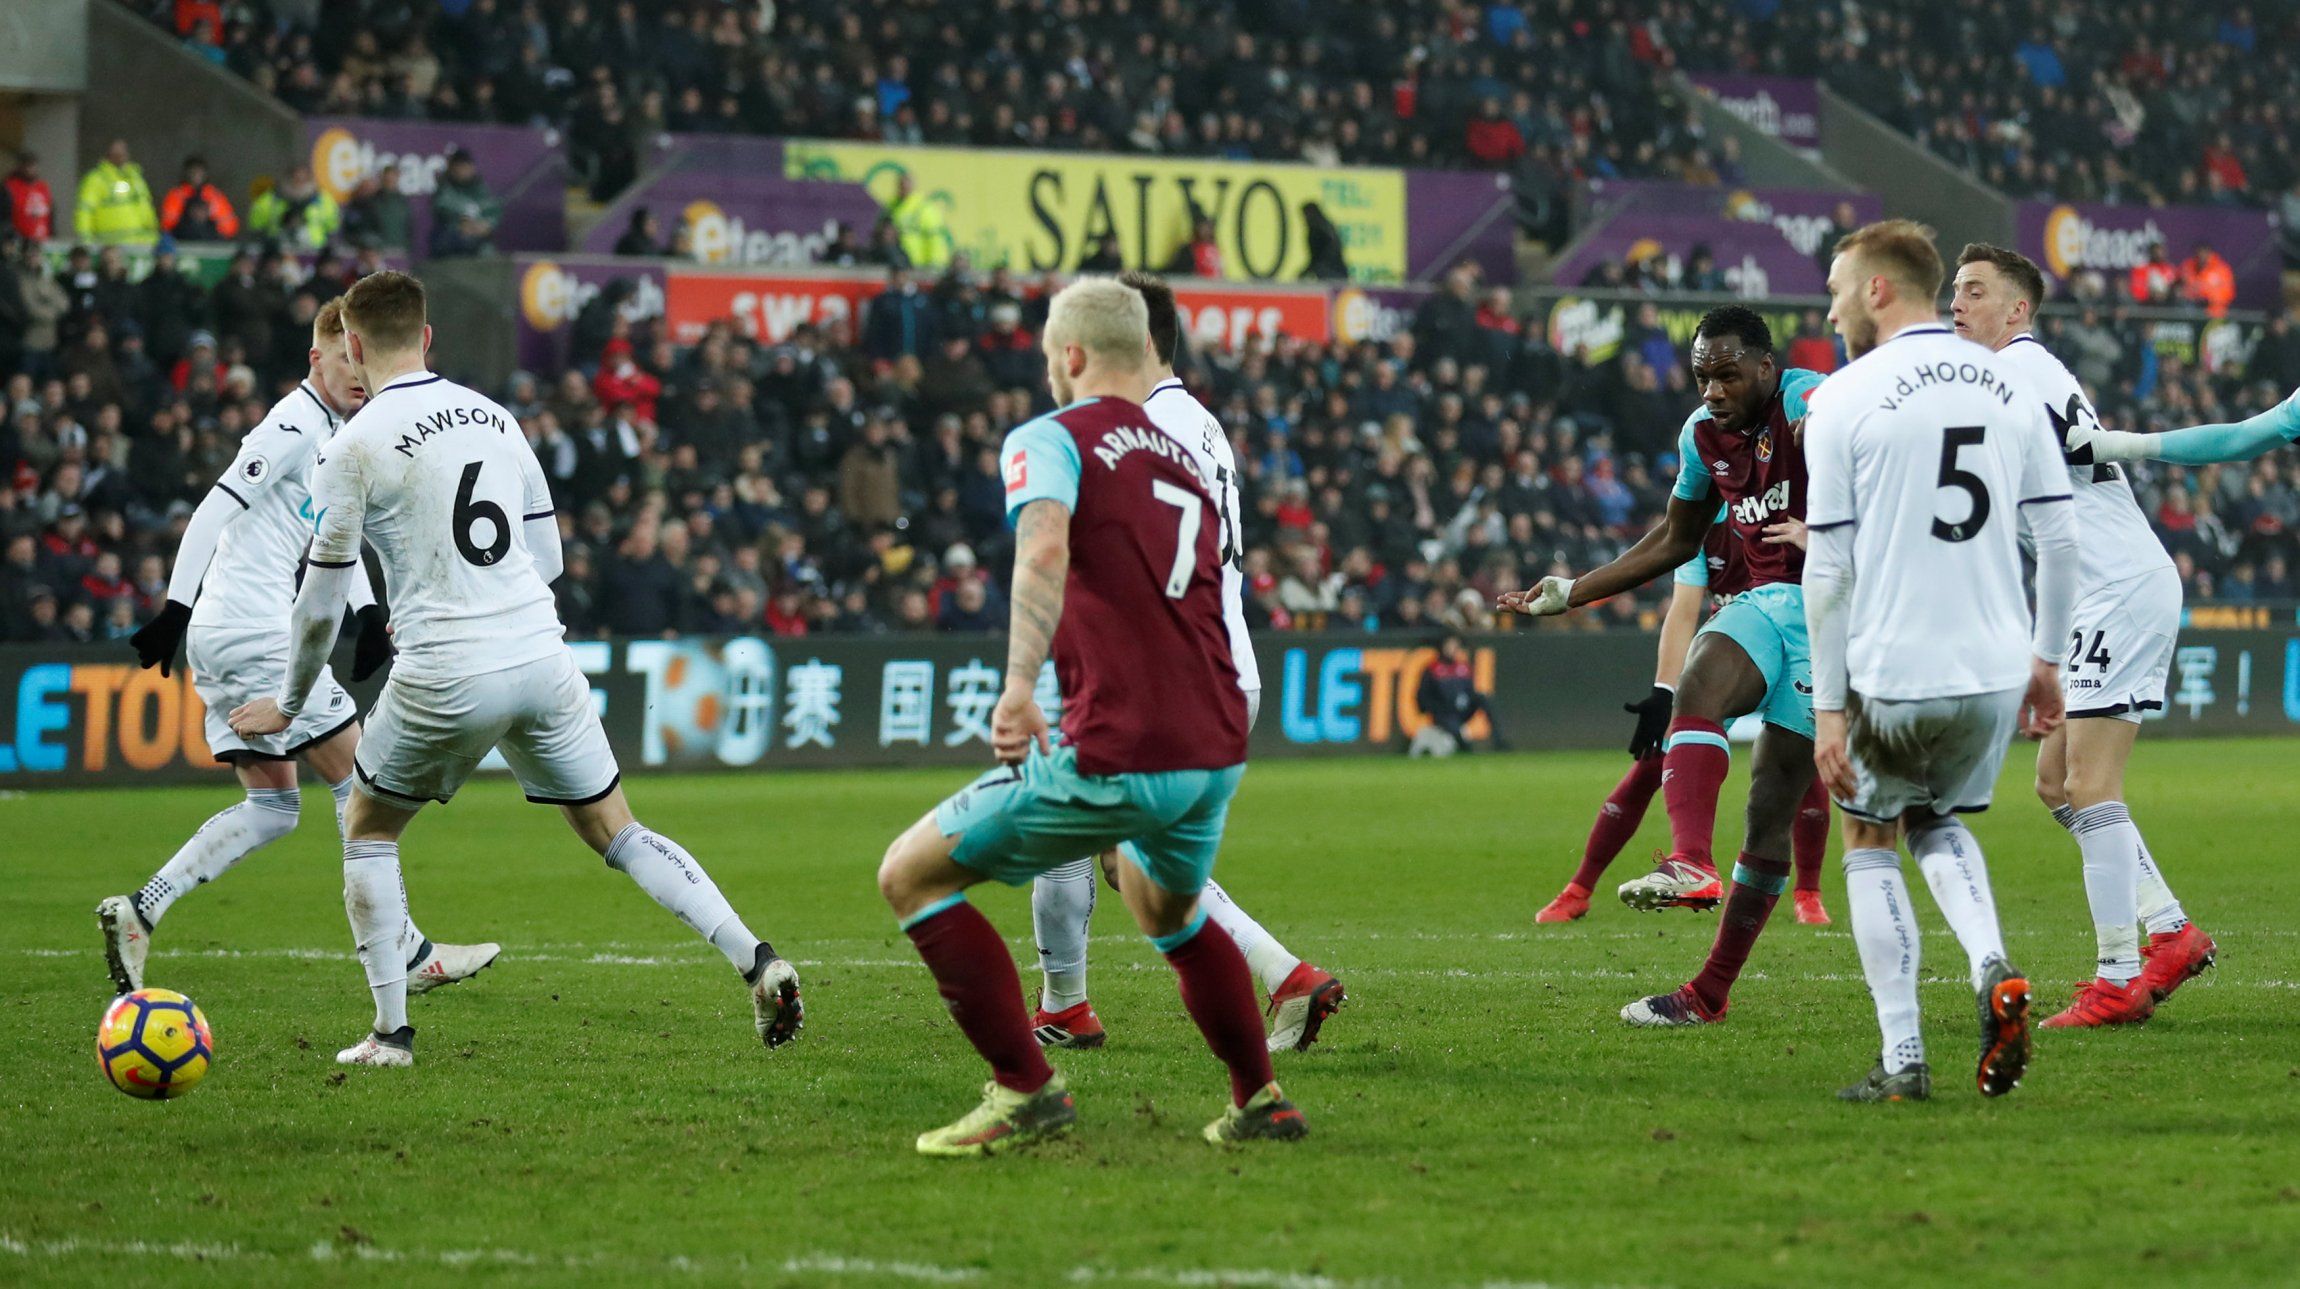 West Ham winger Michail Antonio scores against Swansea